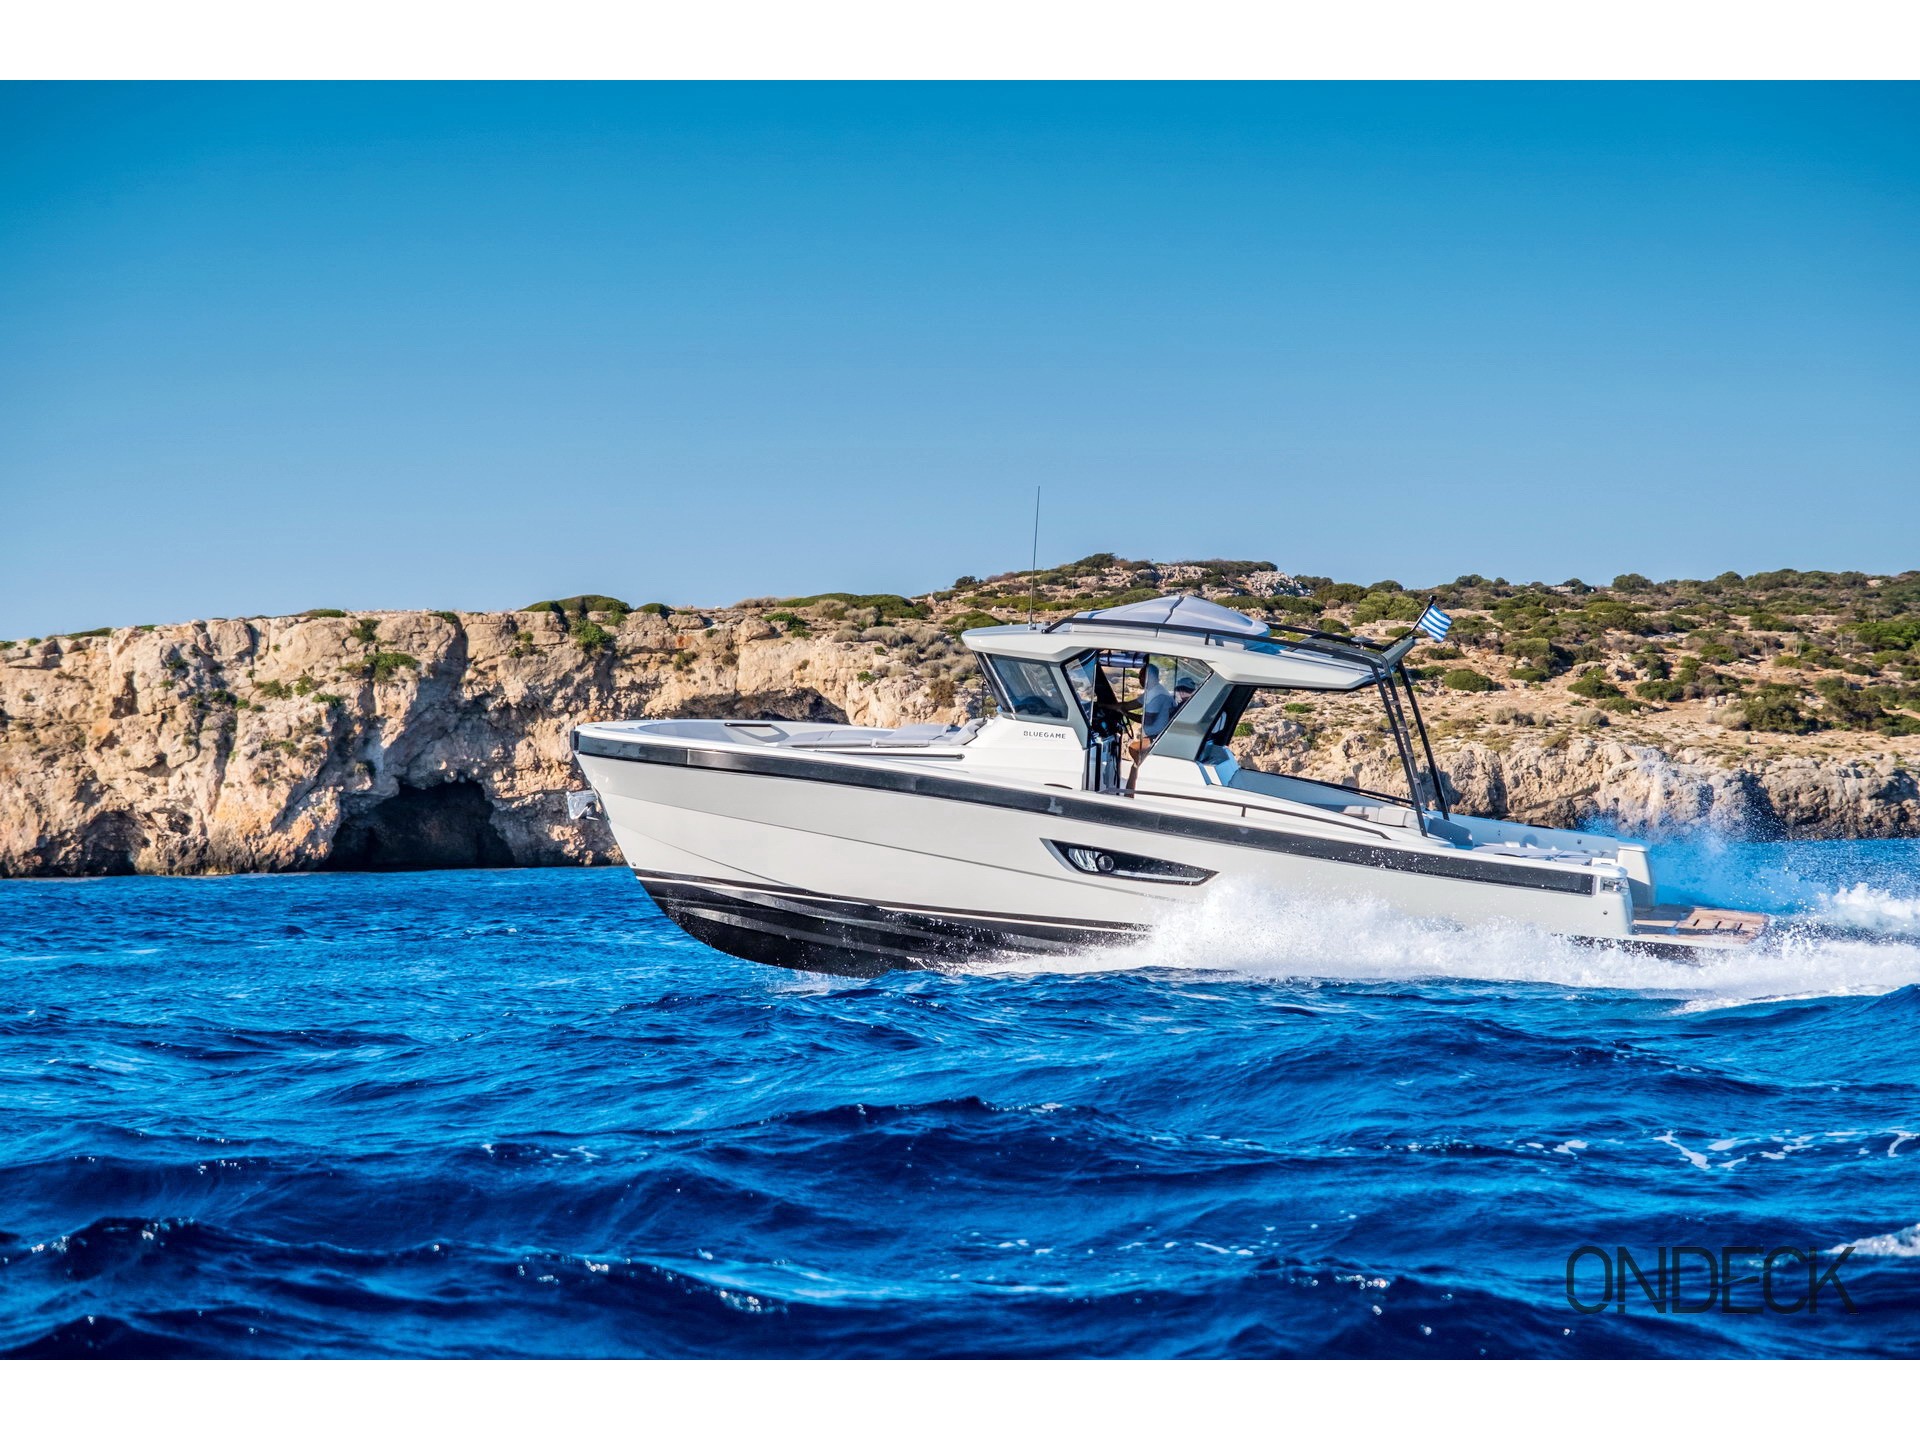 Skipper 30 - Motorboat rental worldwide & Boat hire in Greece Cyclades Islands Mykonos Mykonos 1